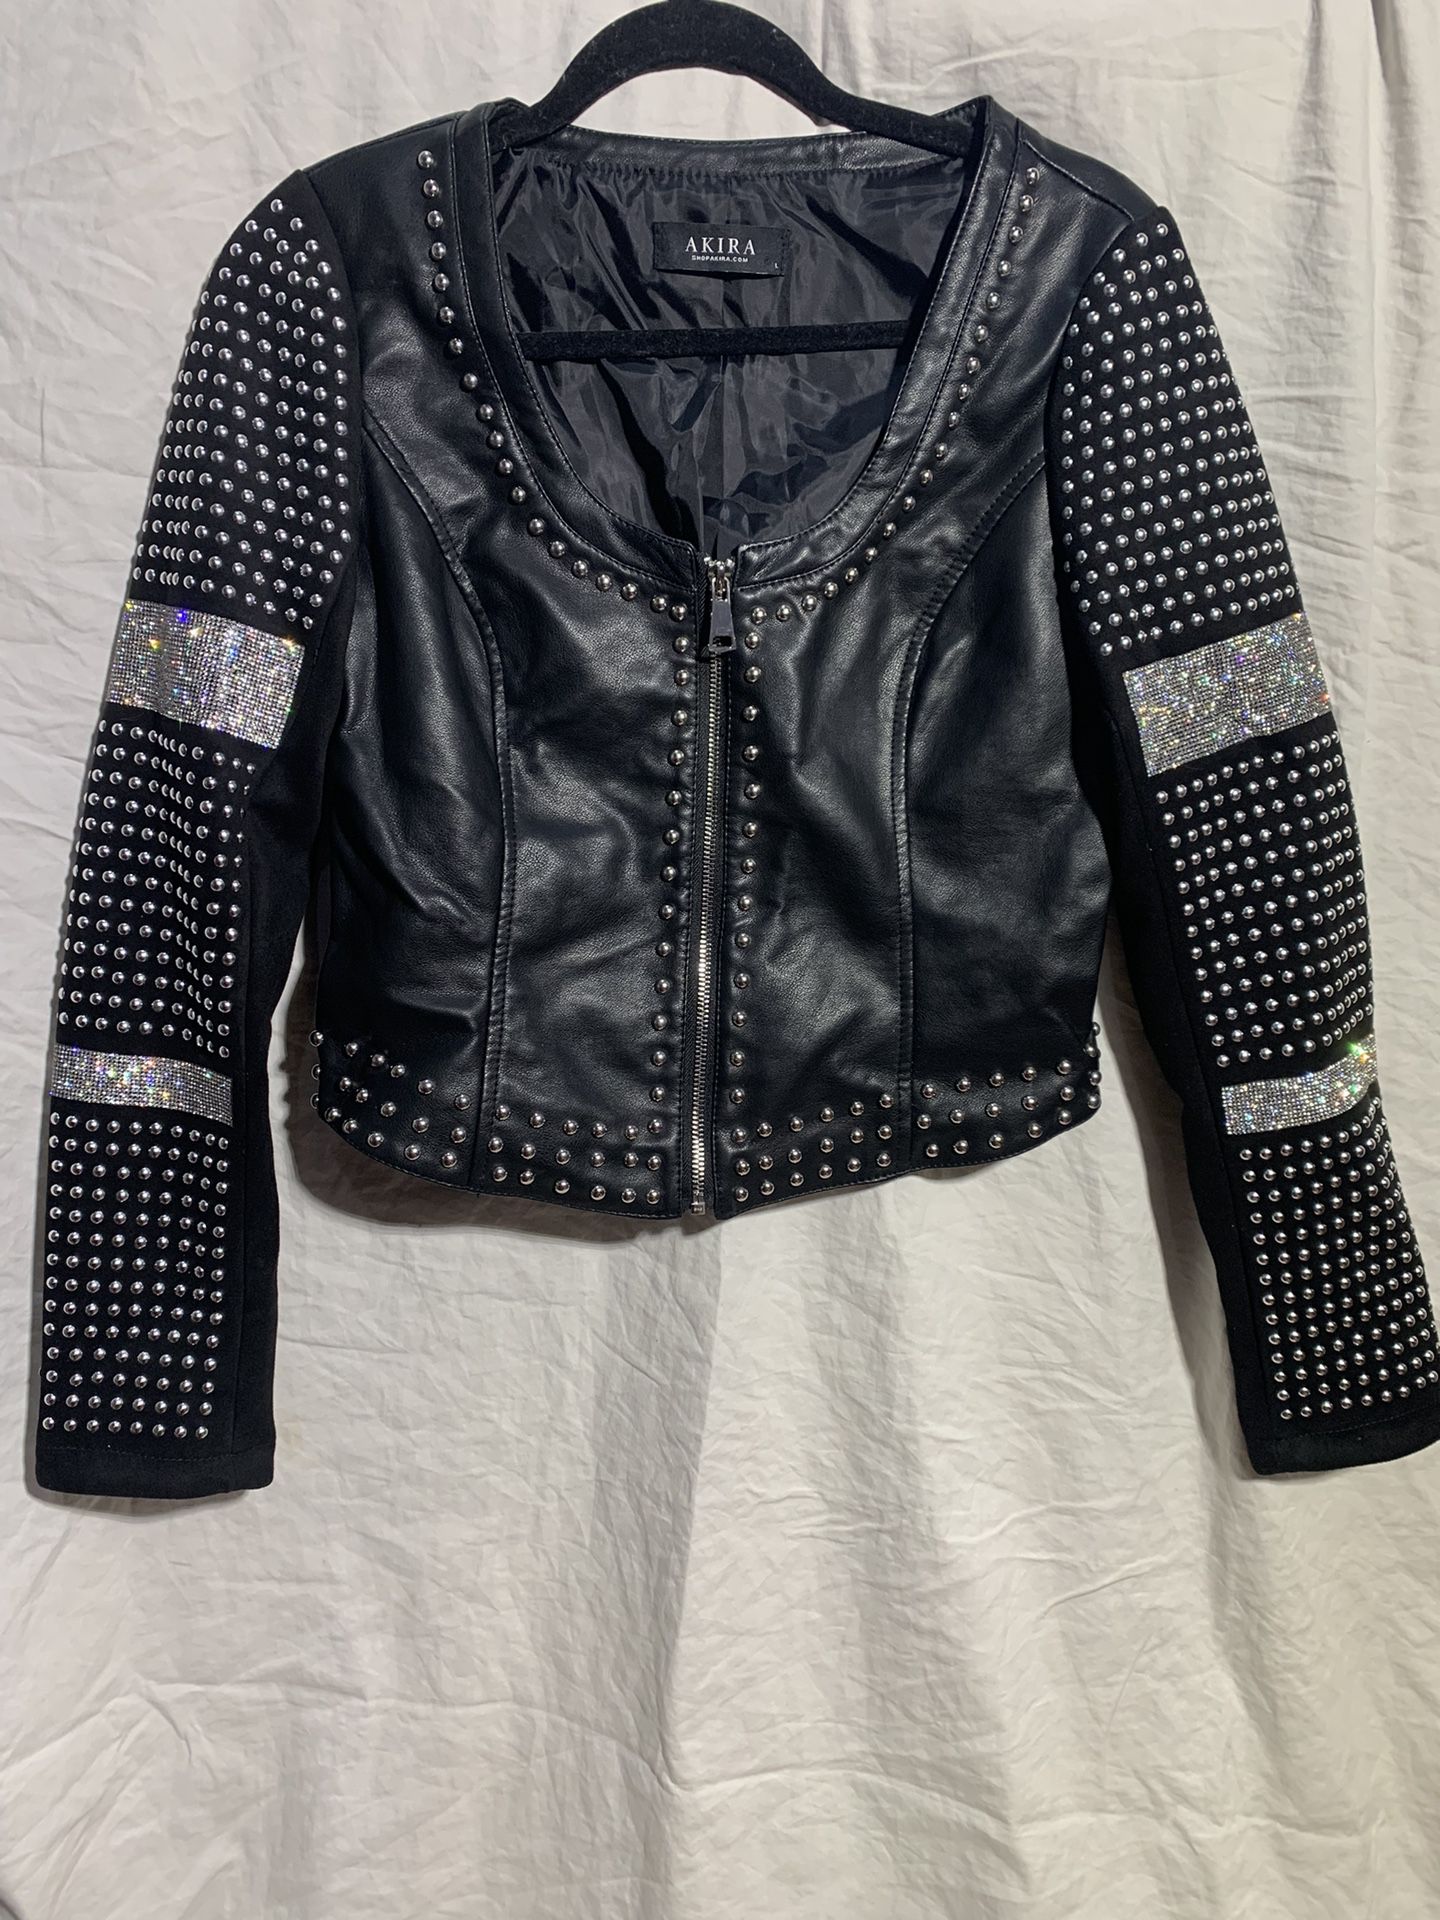 Akira Black Leather Jacket 